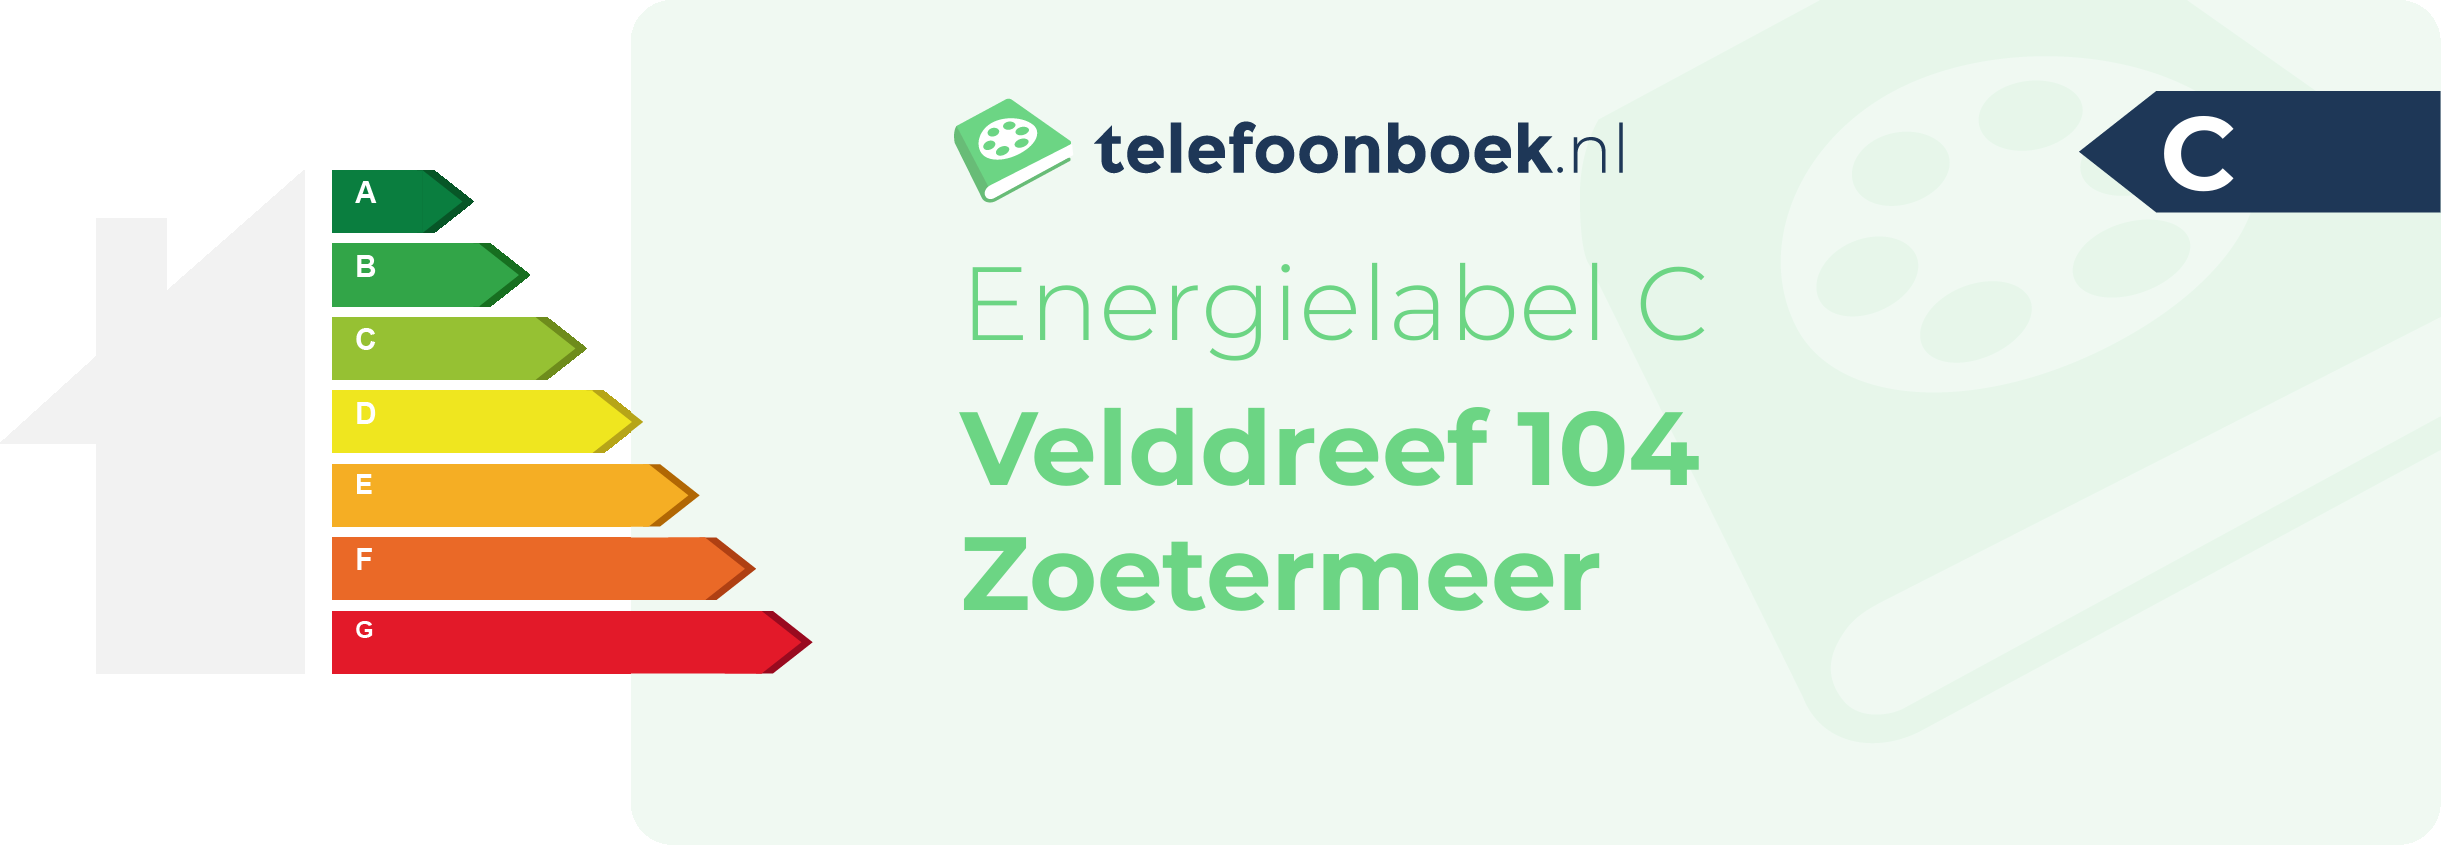 Energielabel Velddreef 104 Zoetermeer